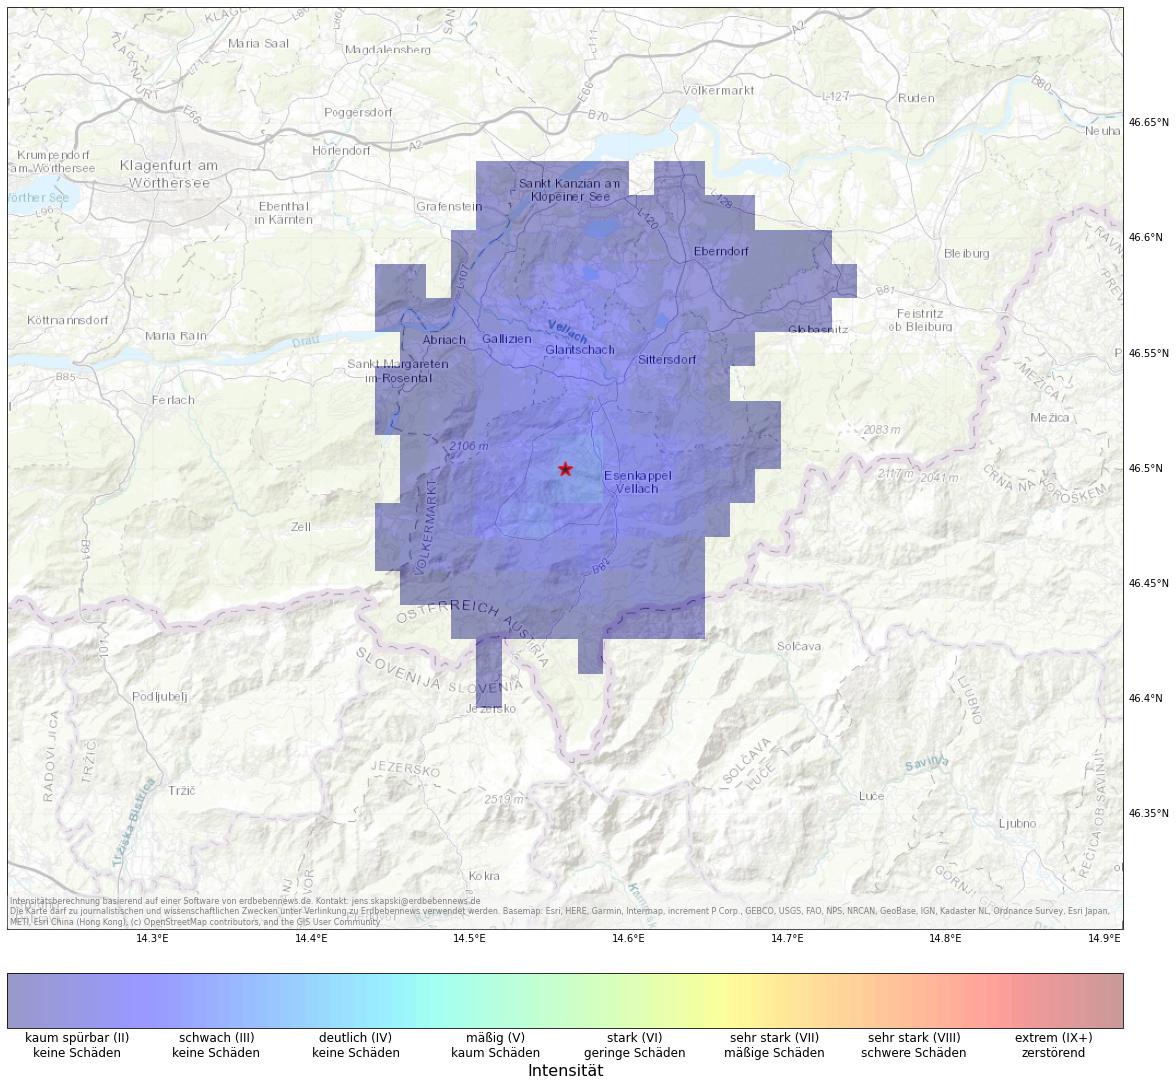 Berechnete Intensität (ShakeMap) des Erdbebens der Stärke 2.7 am 5. Januar, 3:20 Uhr in Österreich